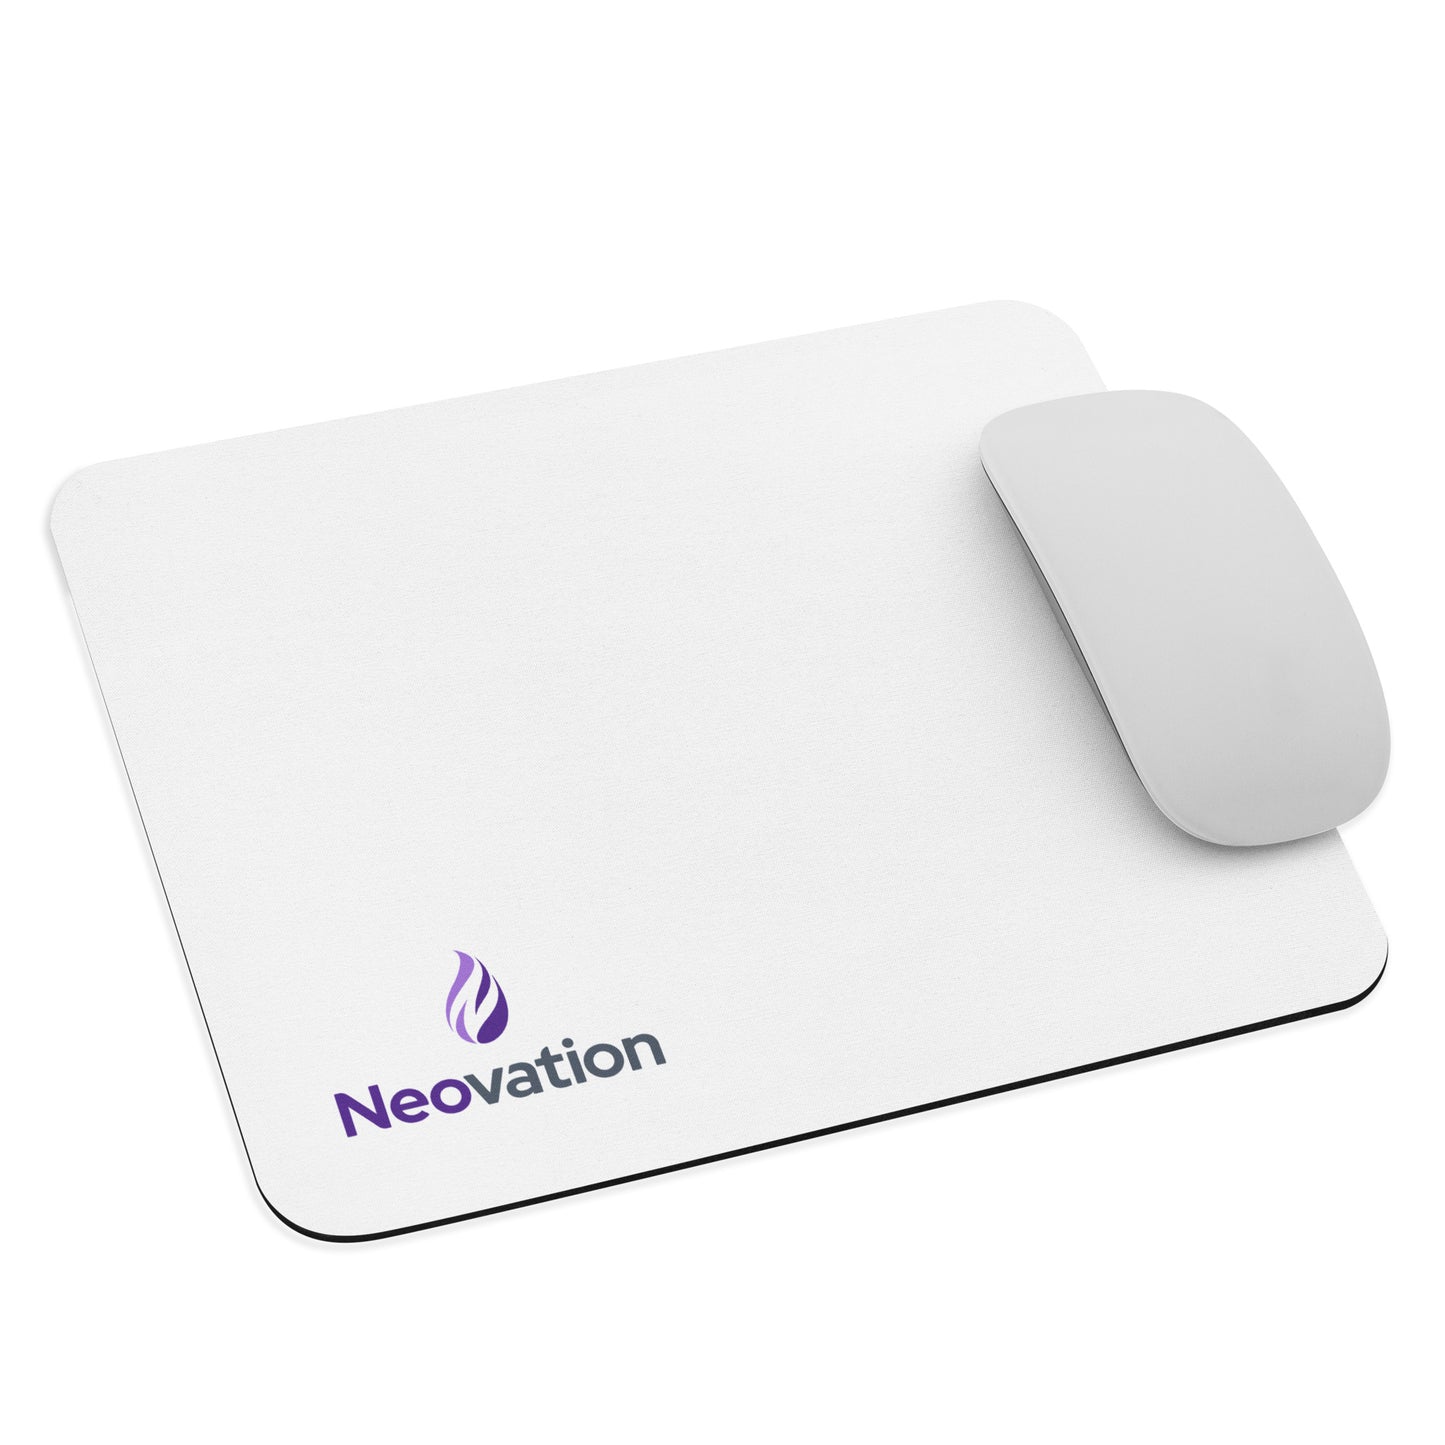 Neovation Logo Mouse Pad